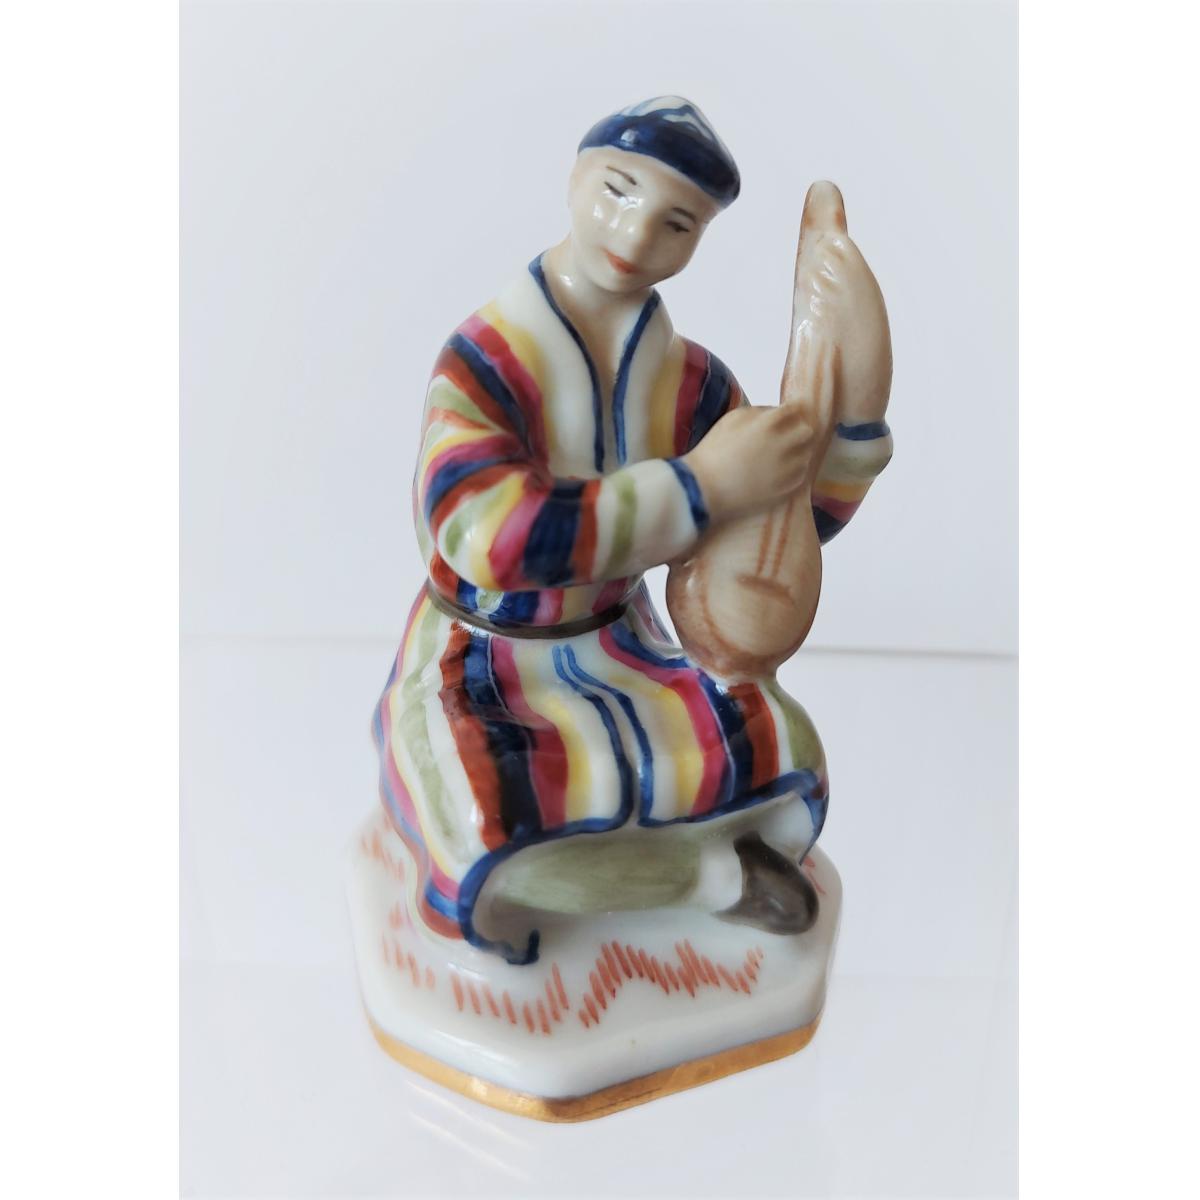 Скульптура "Узбек с домброй" автор Чечулина Г.Д.